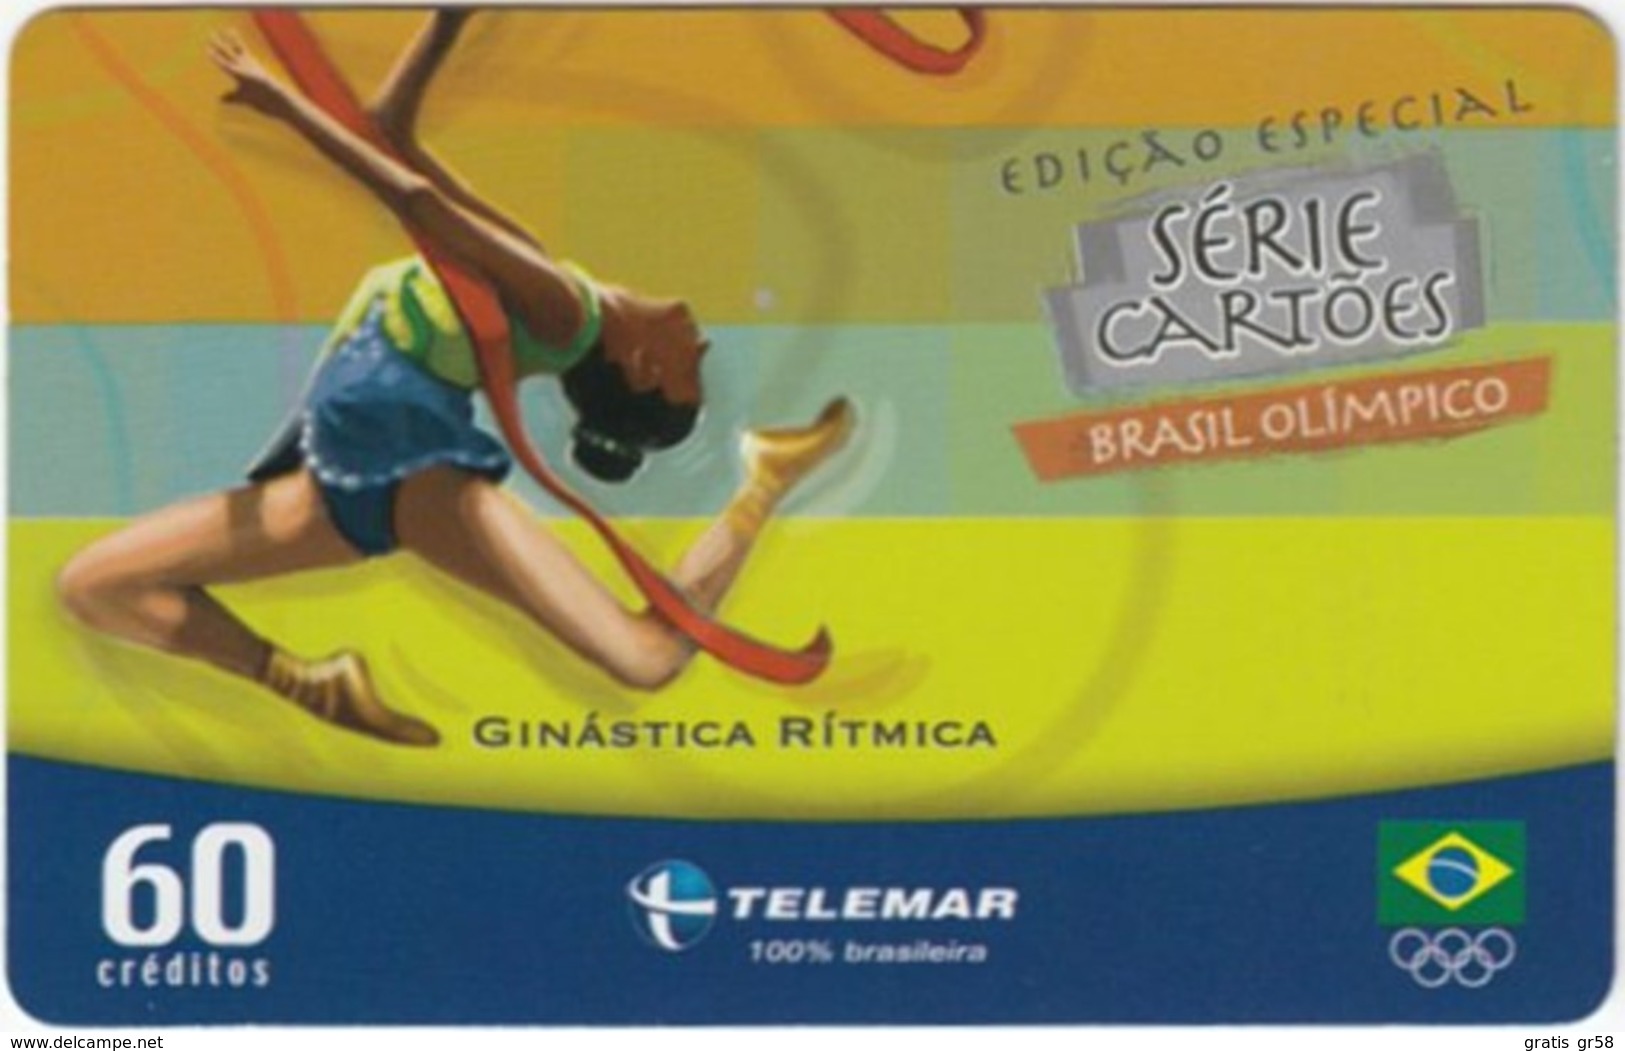 Brazil - BR-TLM-MG-2011, 06/34 - 0150, Event, Rhythm Gymnastics, 60U, 30,960ex, 4/04, Used - Olympic Games